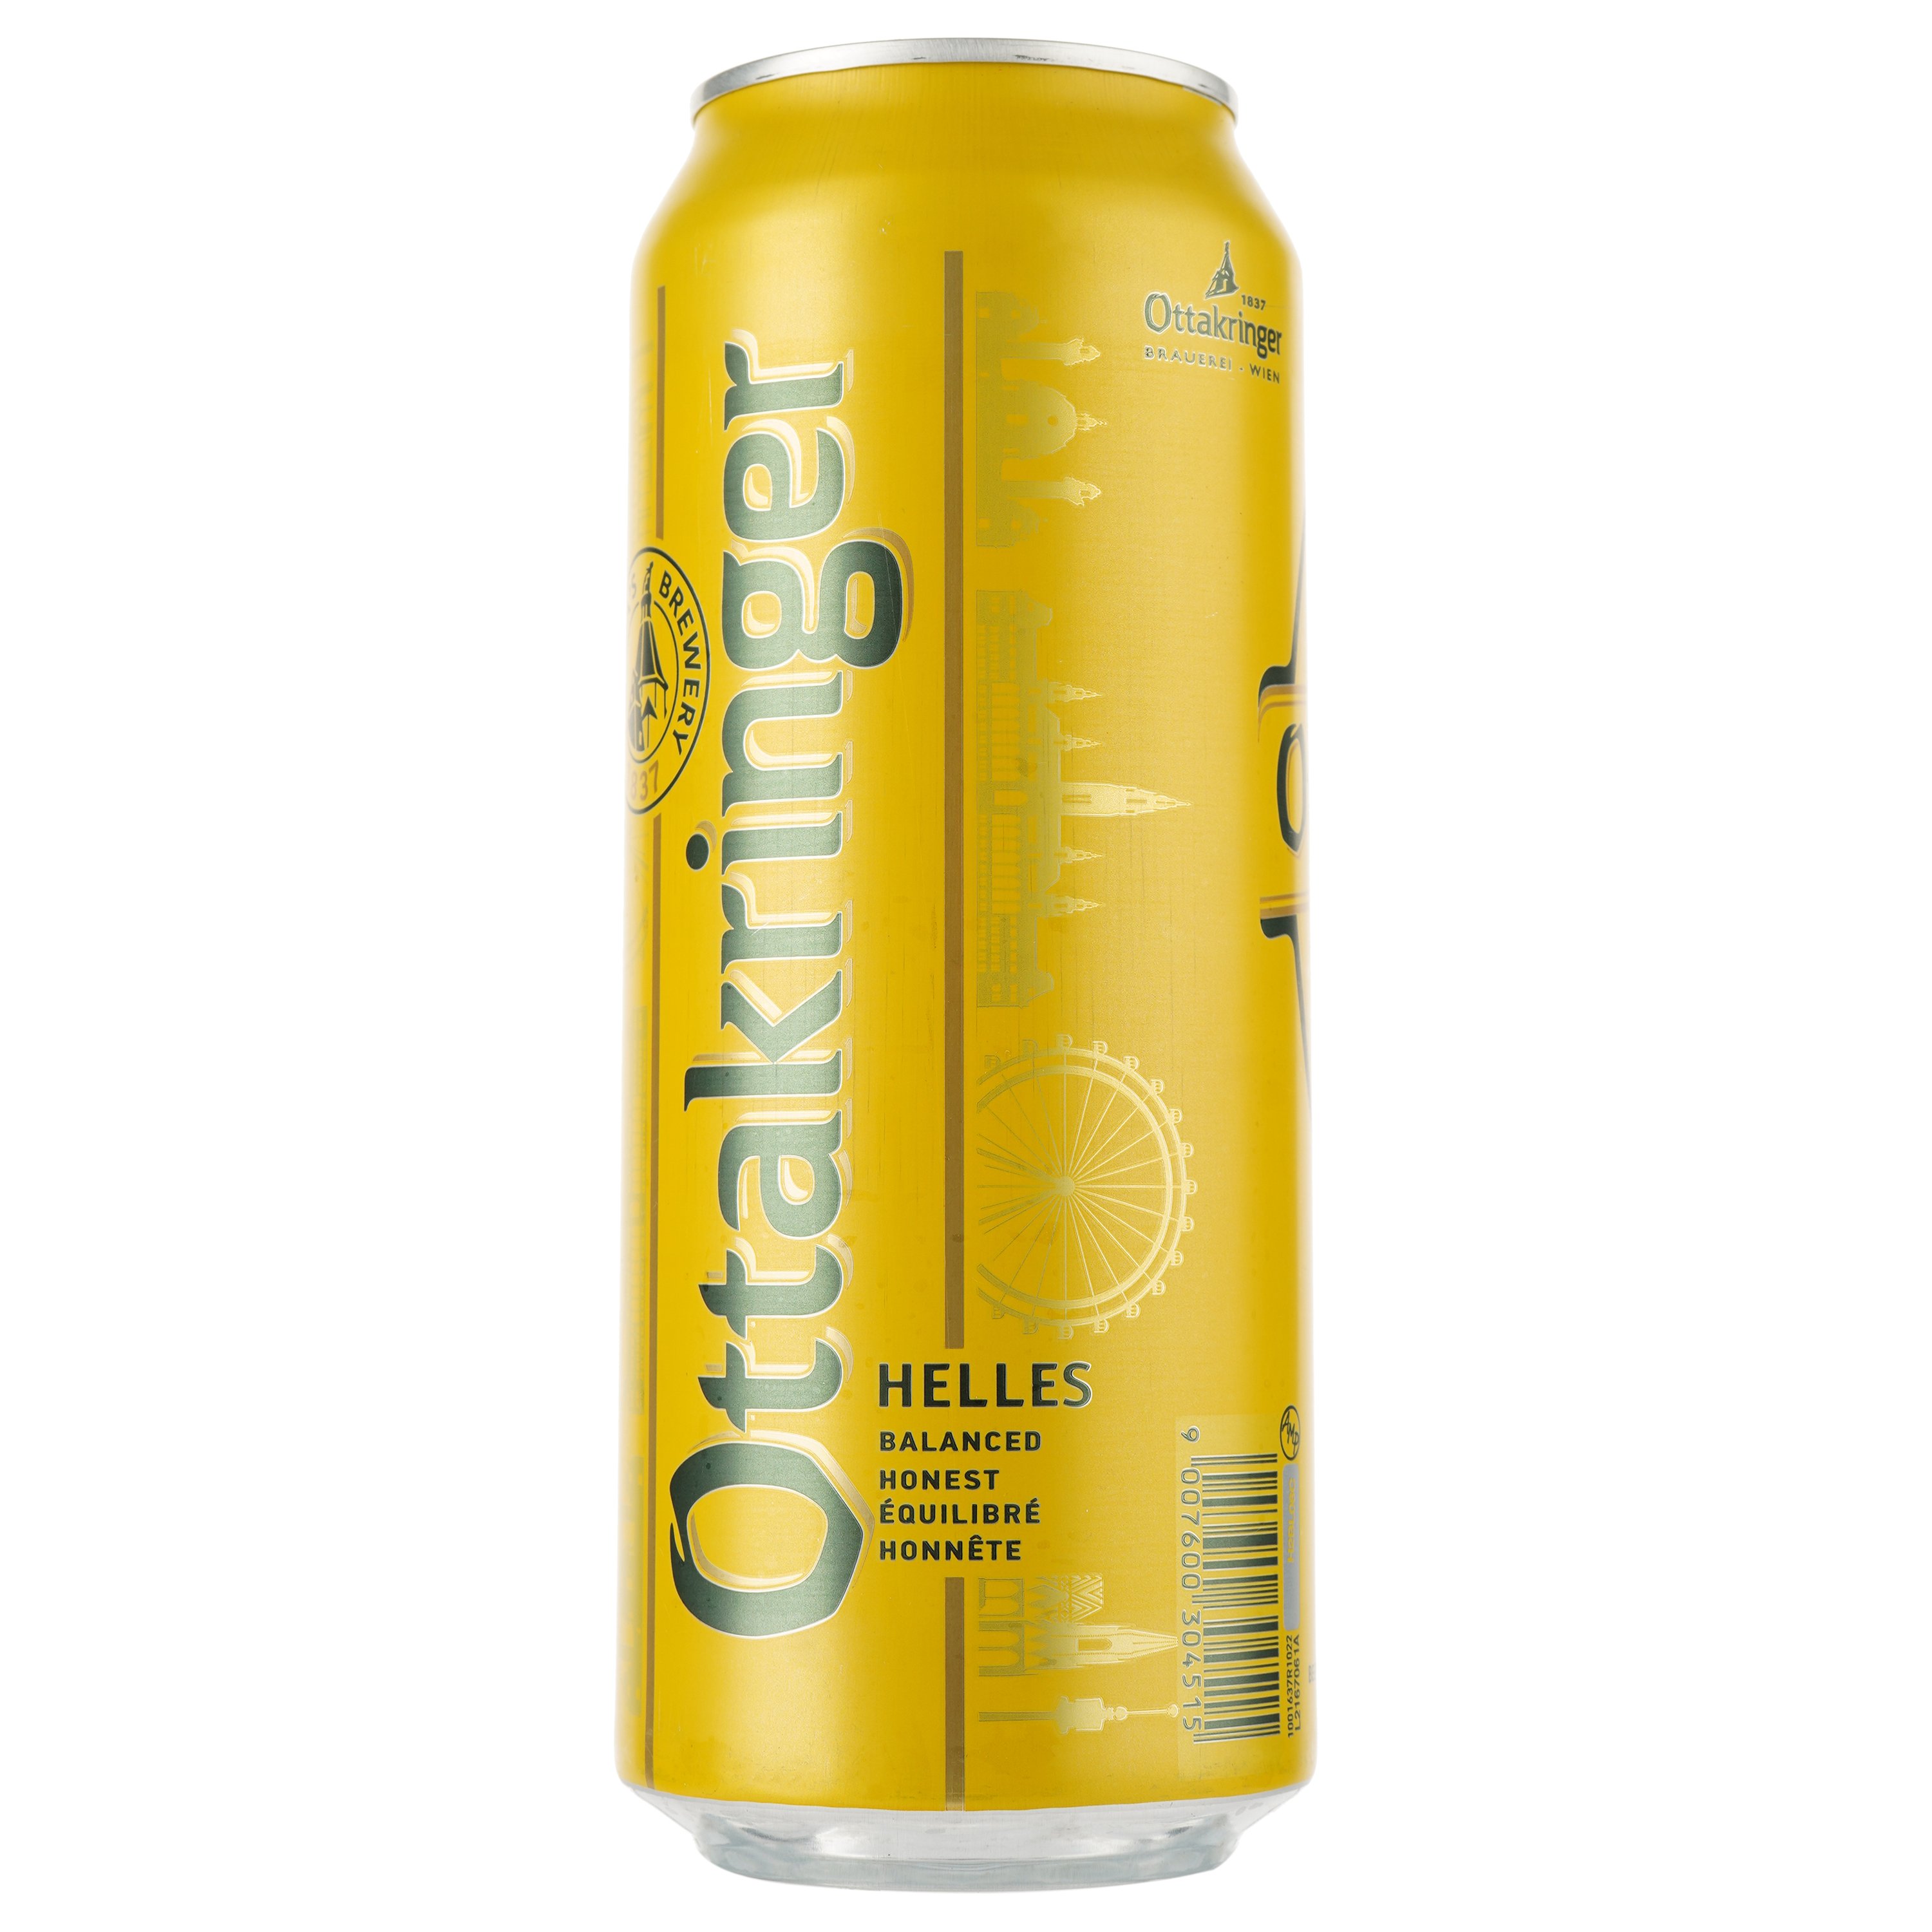 Пиво Ottakringer Helles, светлое, фильтрованное, 5,2%, ж/б, 0,5 л - фото 2